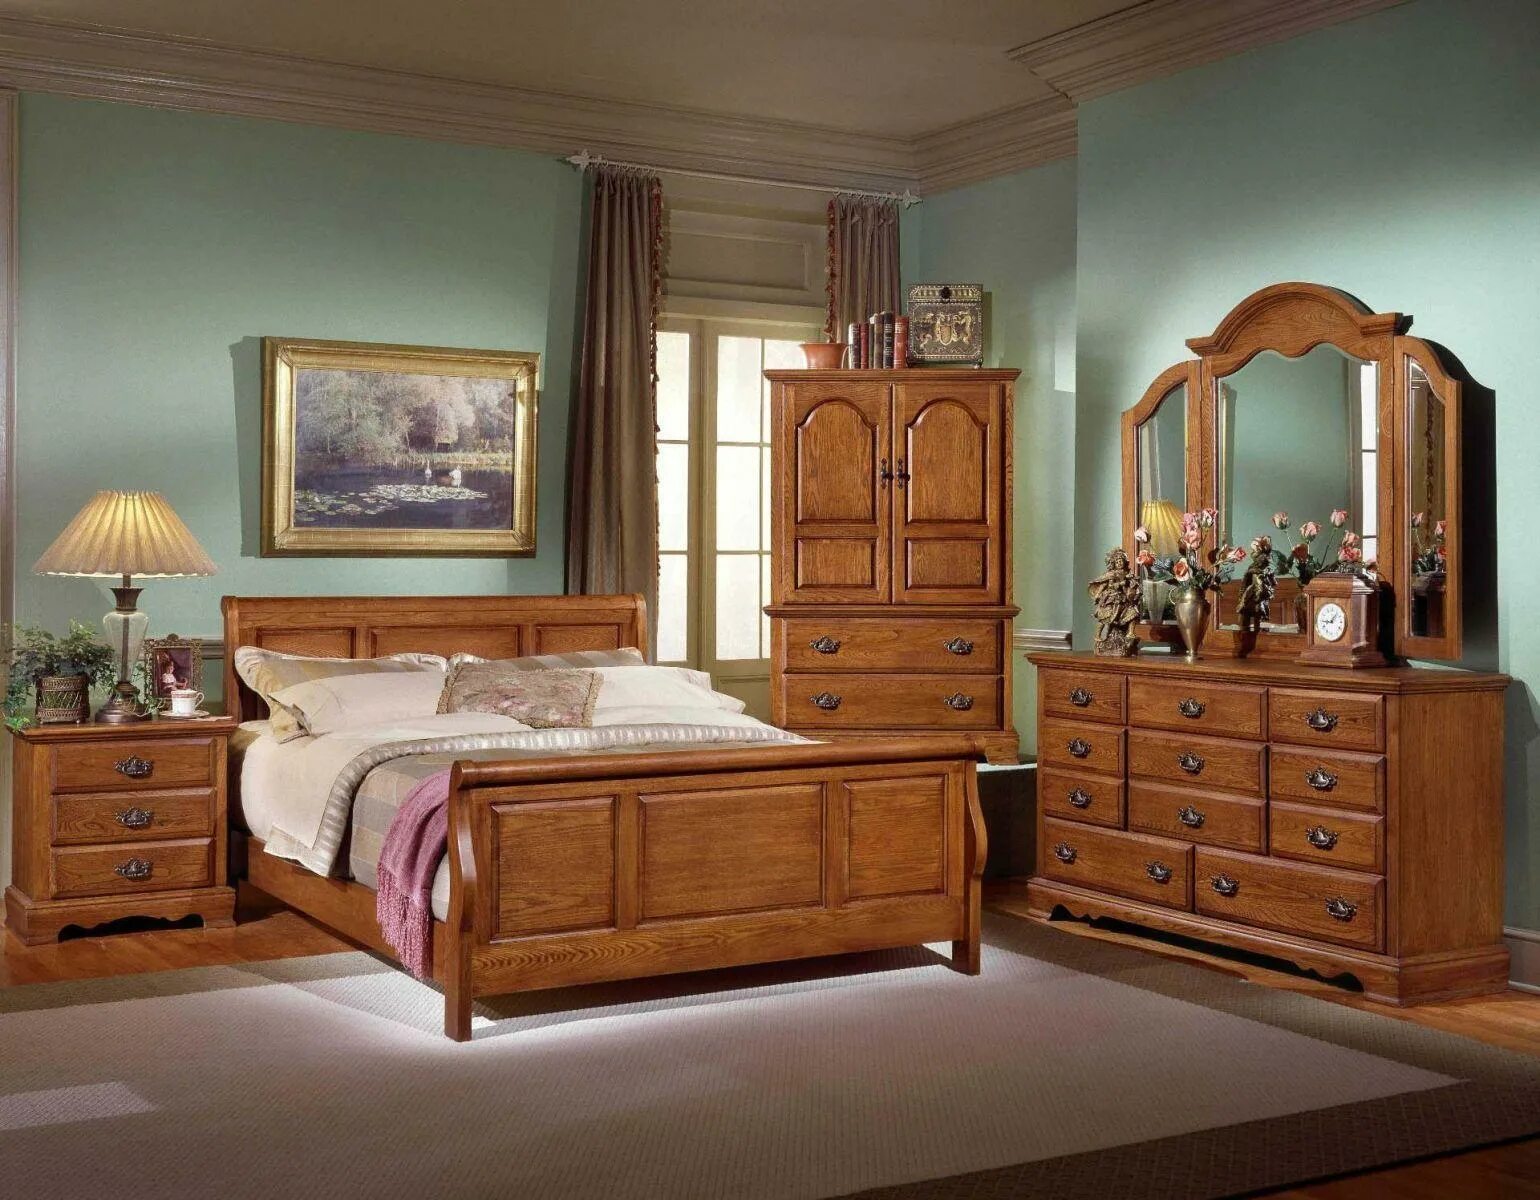 Сайты мебели из массива. Спальня из массива гевеи 4934. Румынская мебель Легаси ирландский стиль Кантри. Красивая деревянная мебель. Спальня из дерева.